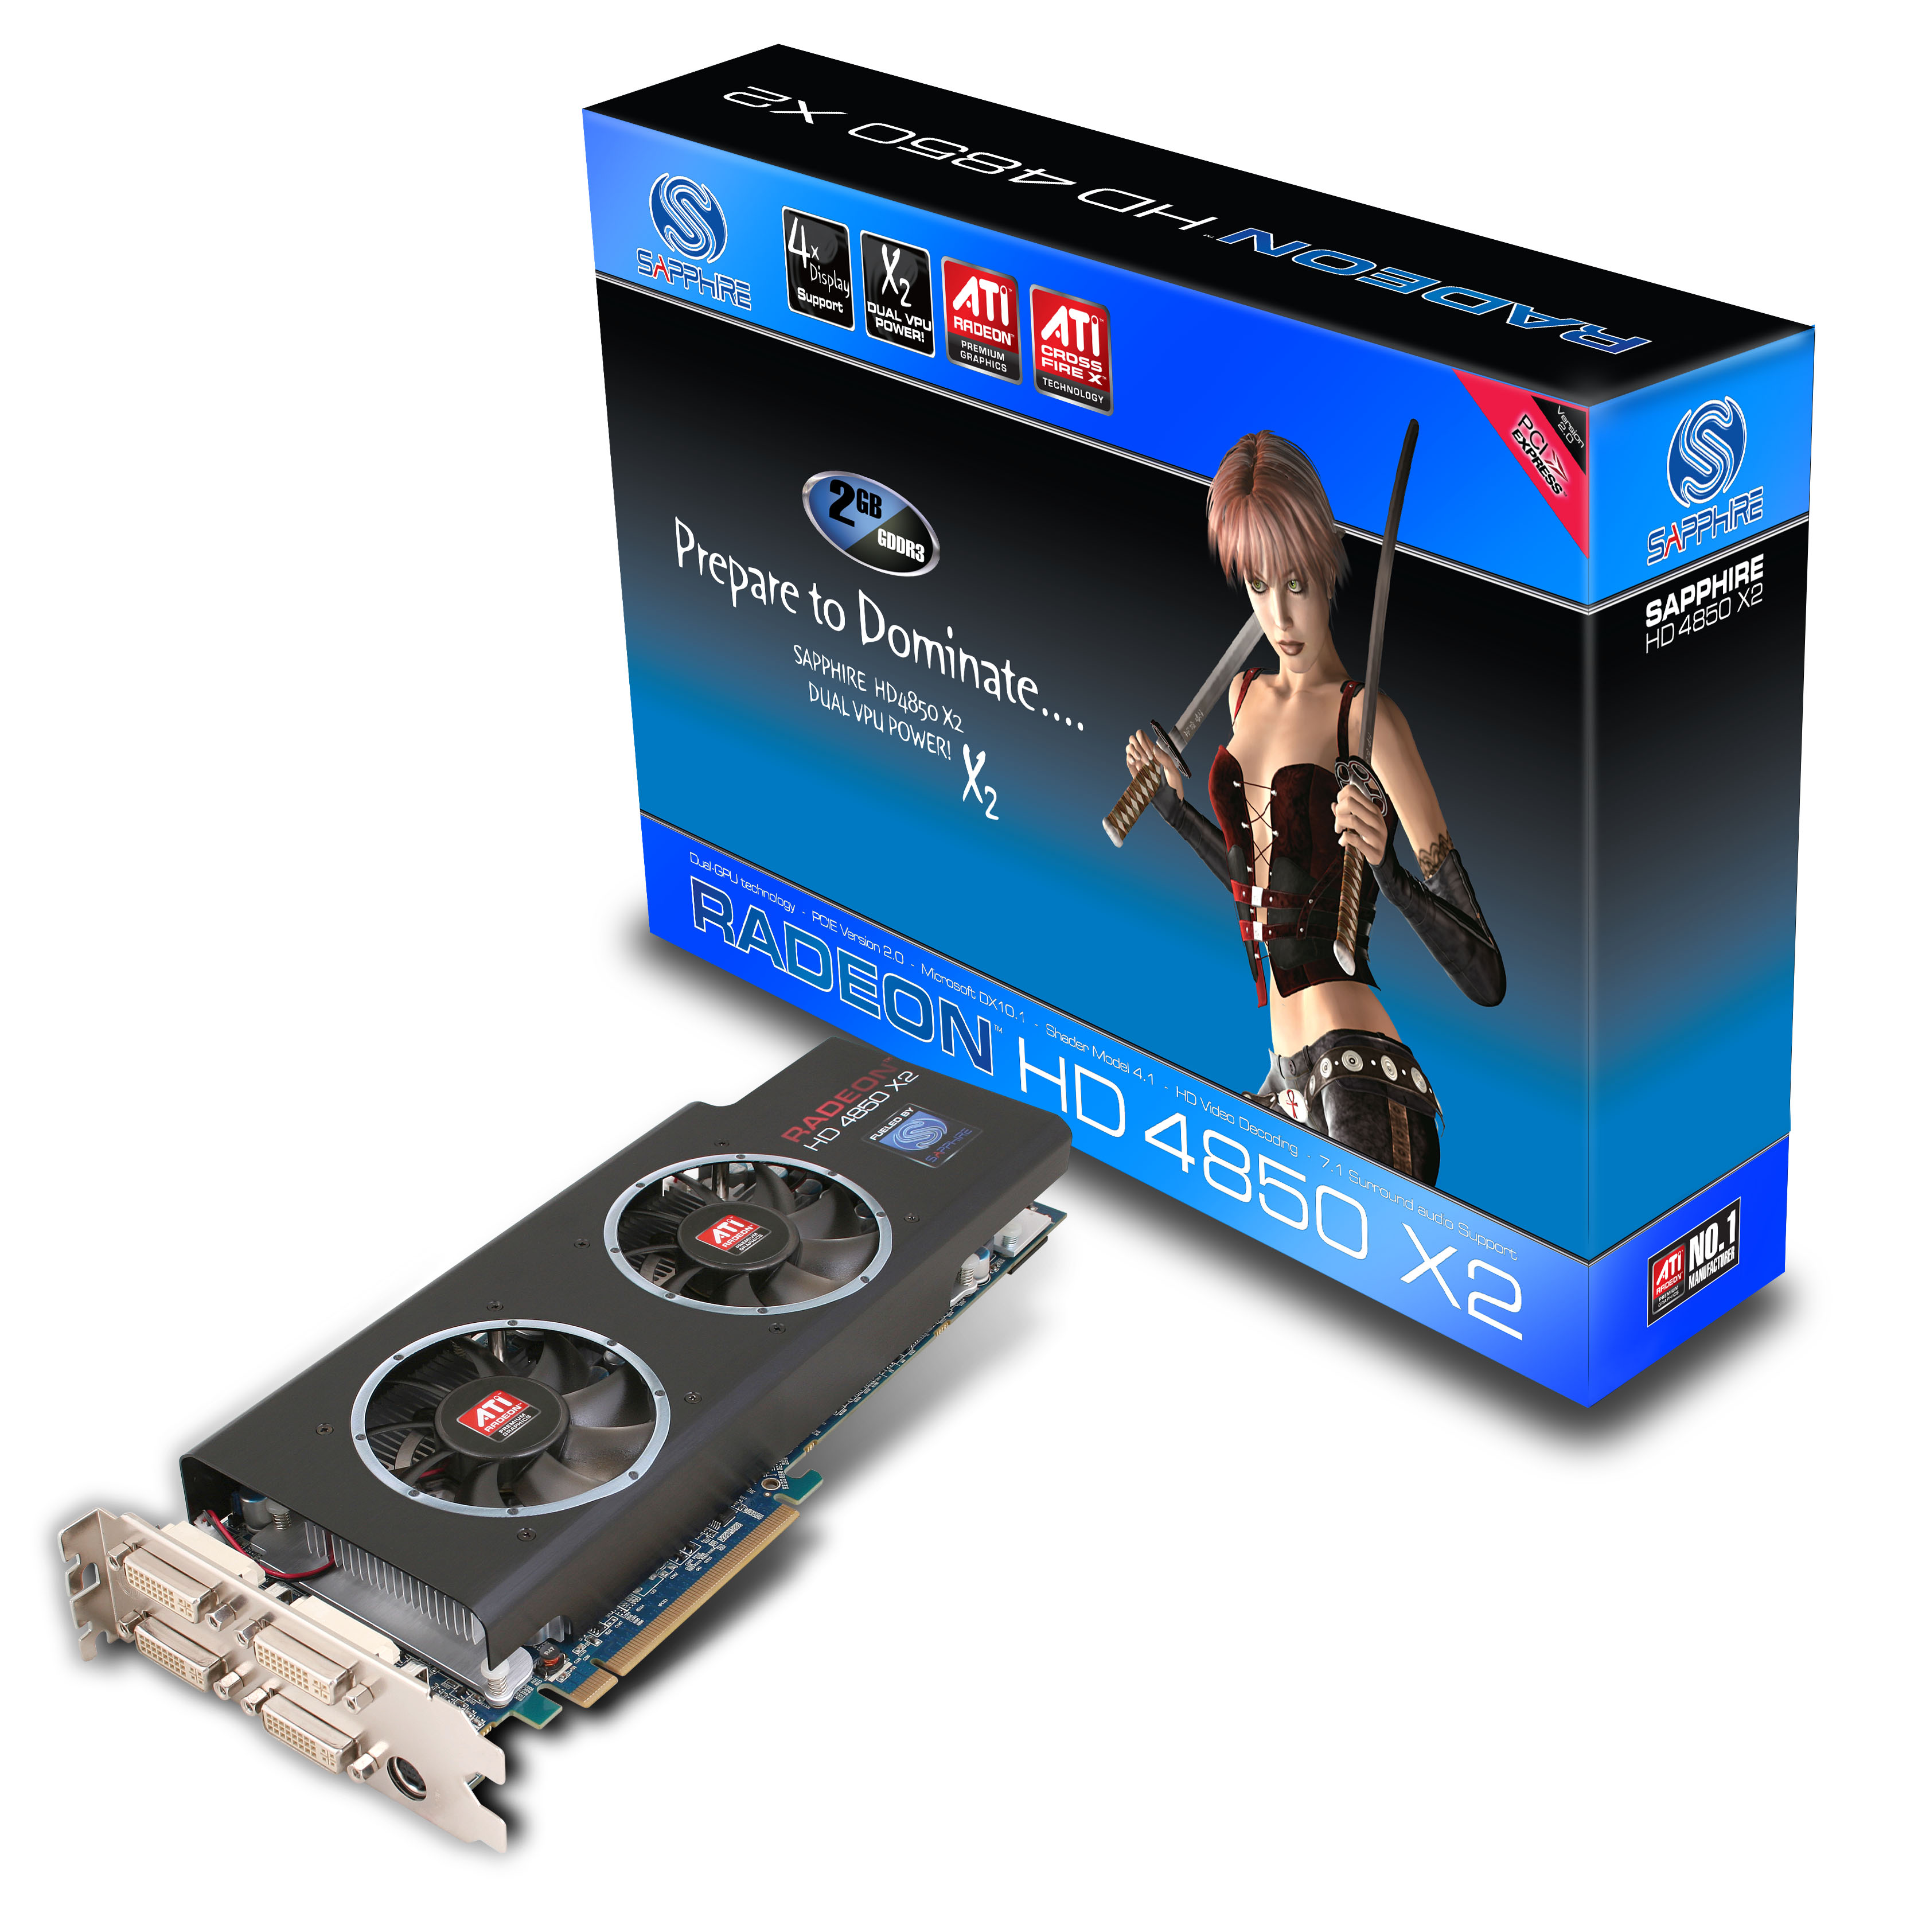 Immagine pubblicata in relazione al seguente contenuto: Sapphire commercializza la dual-gpu Radeon HD 4850 X2 2GB | Nome immagine: news8947_3.jpg